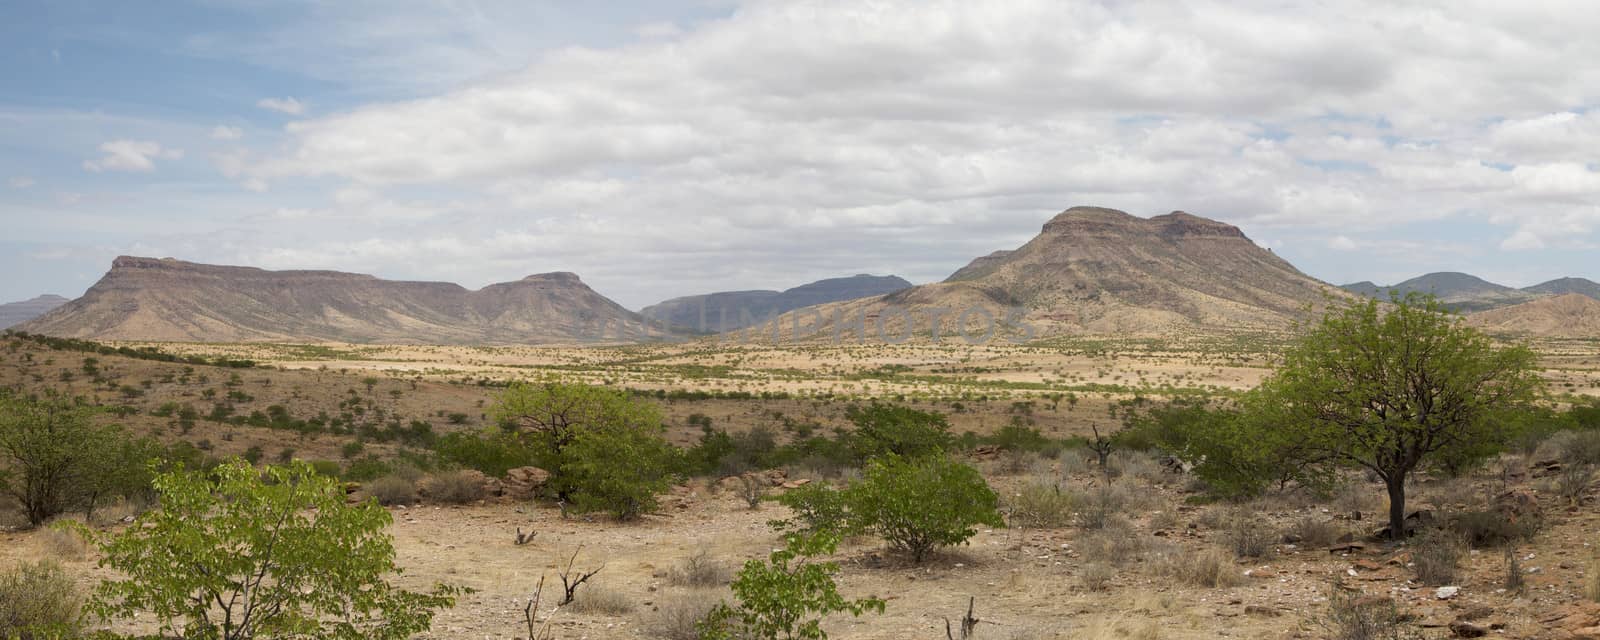 Panorama of the Kaokoland desert by watchtheworld